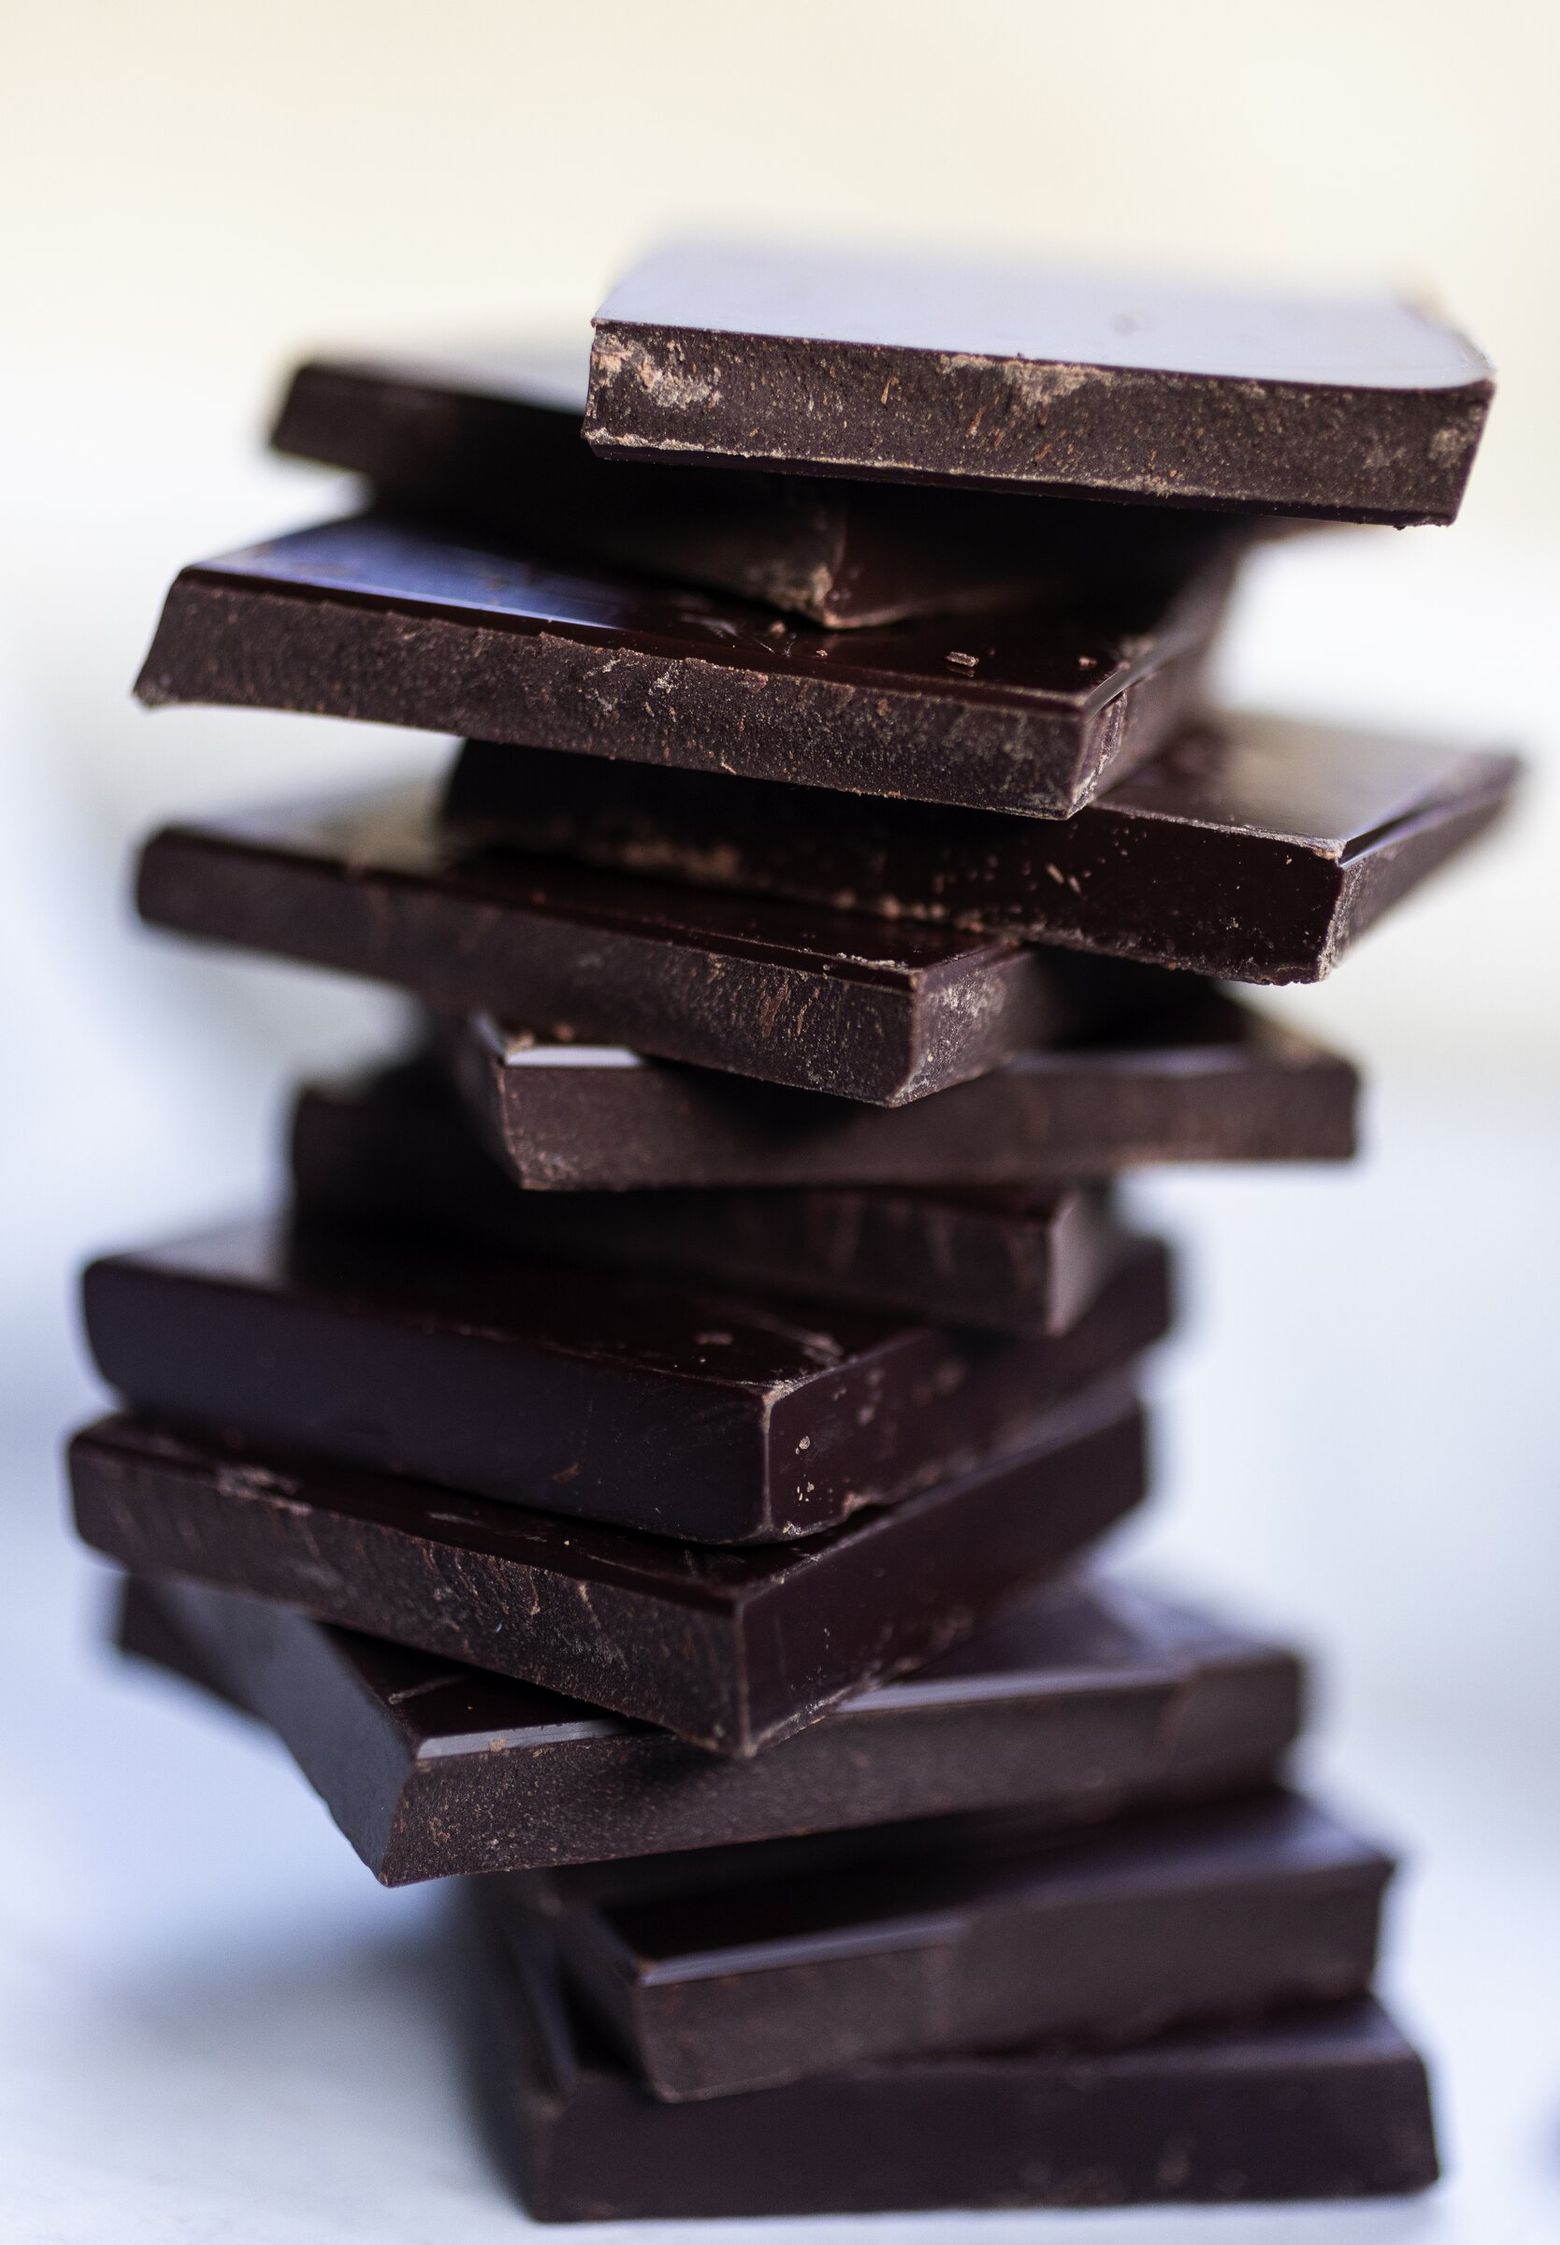 How heavy metals get into dark chocolate bars